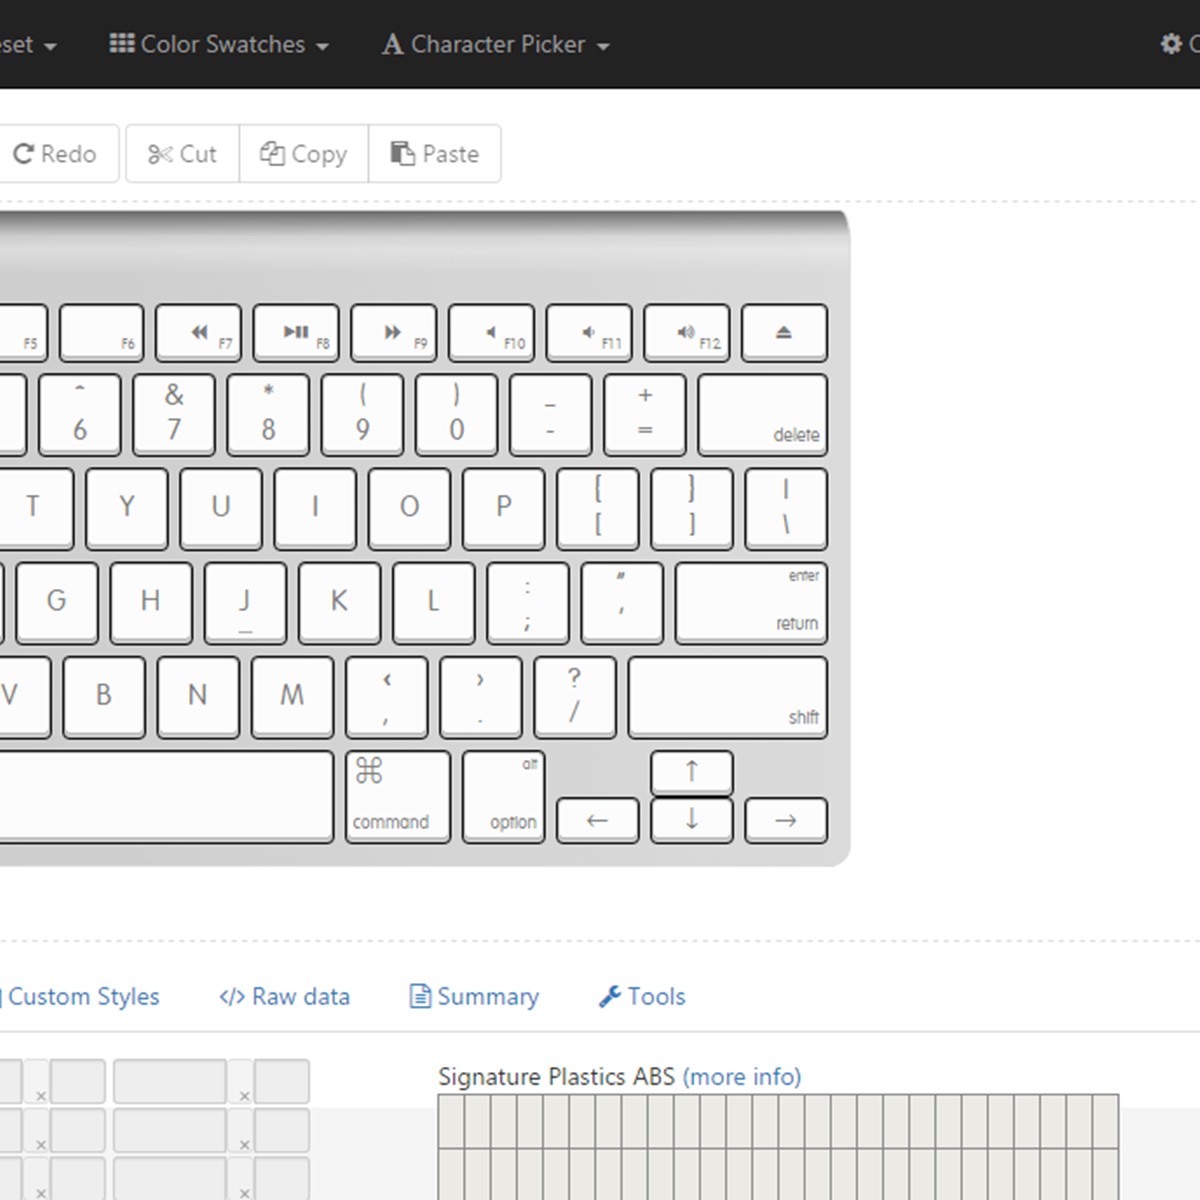 keyboard layout editor to easyavr file